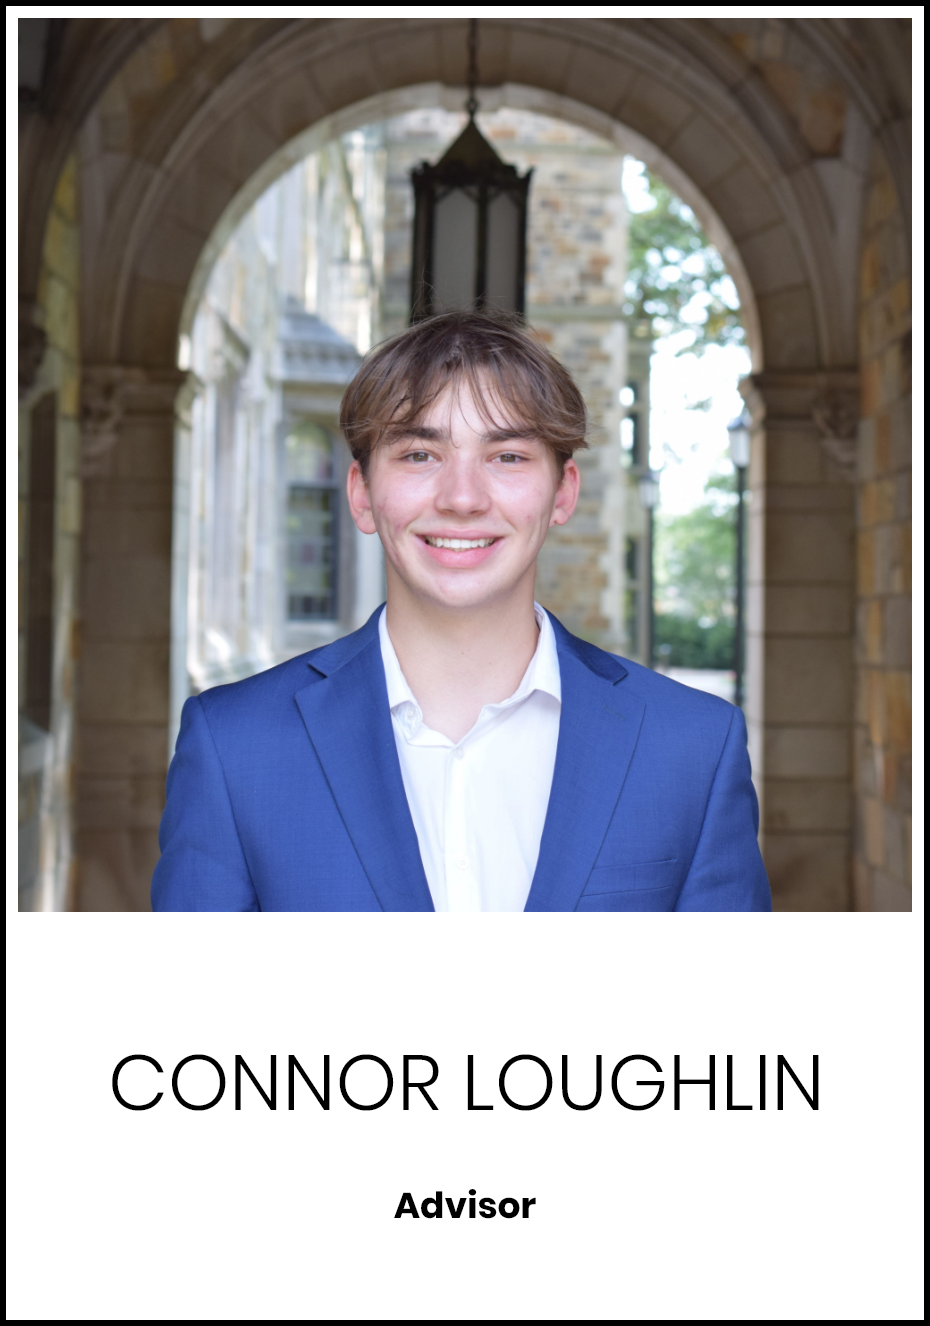 Connor Loughlin